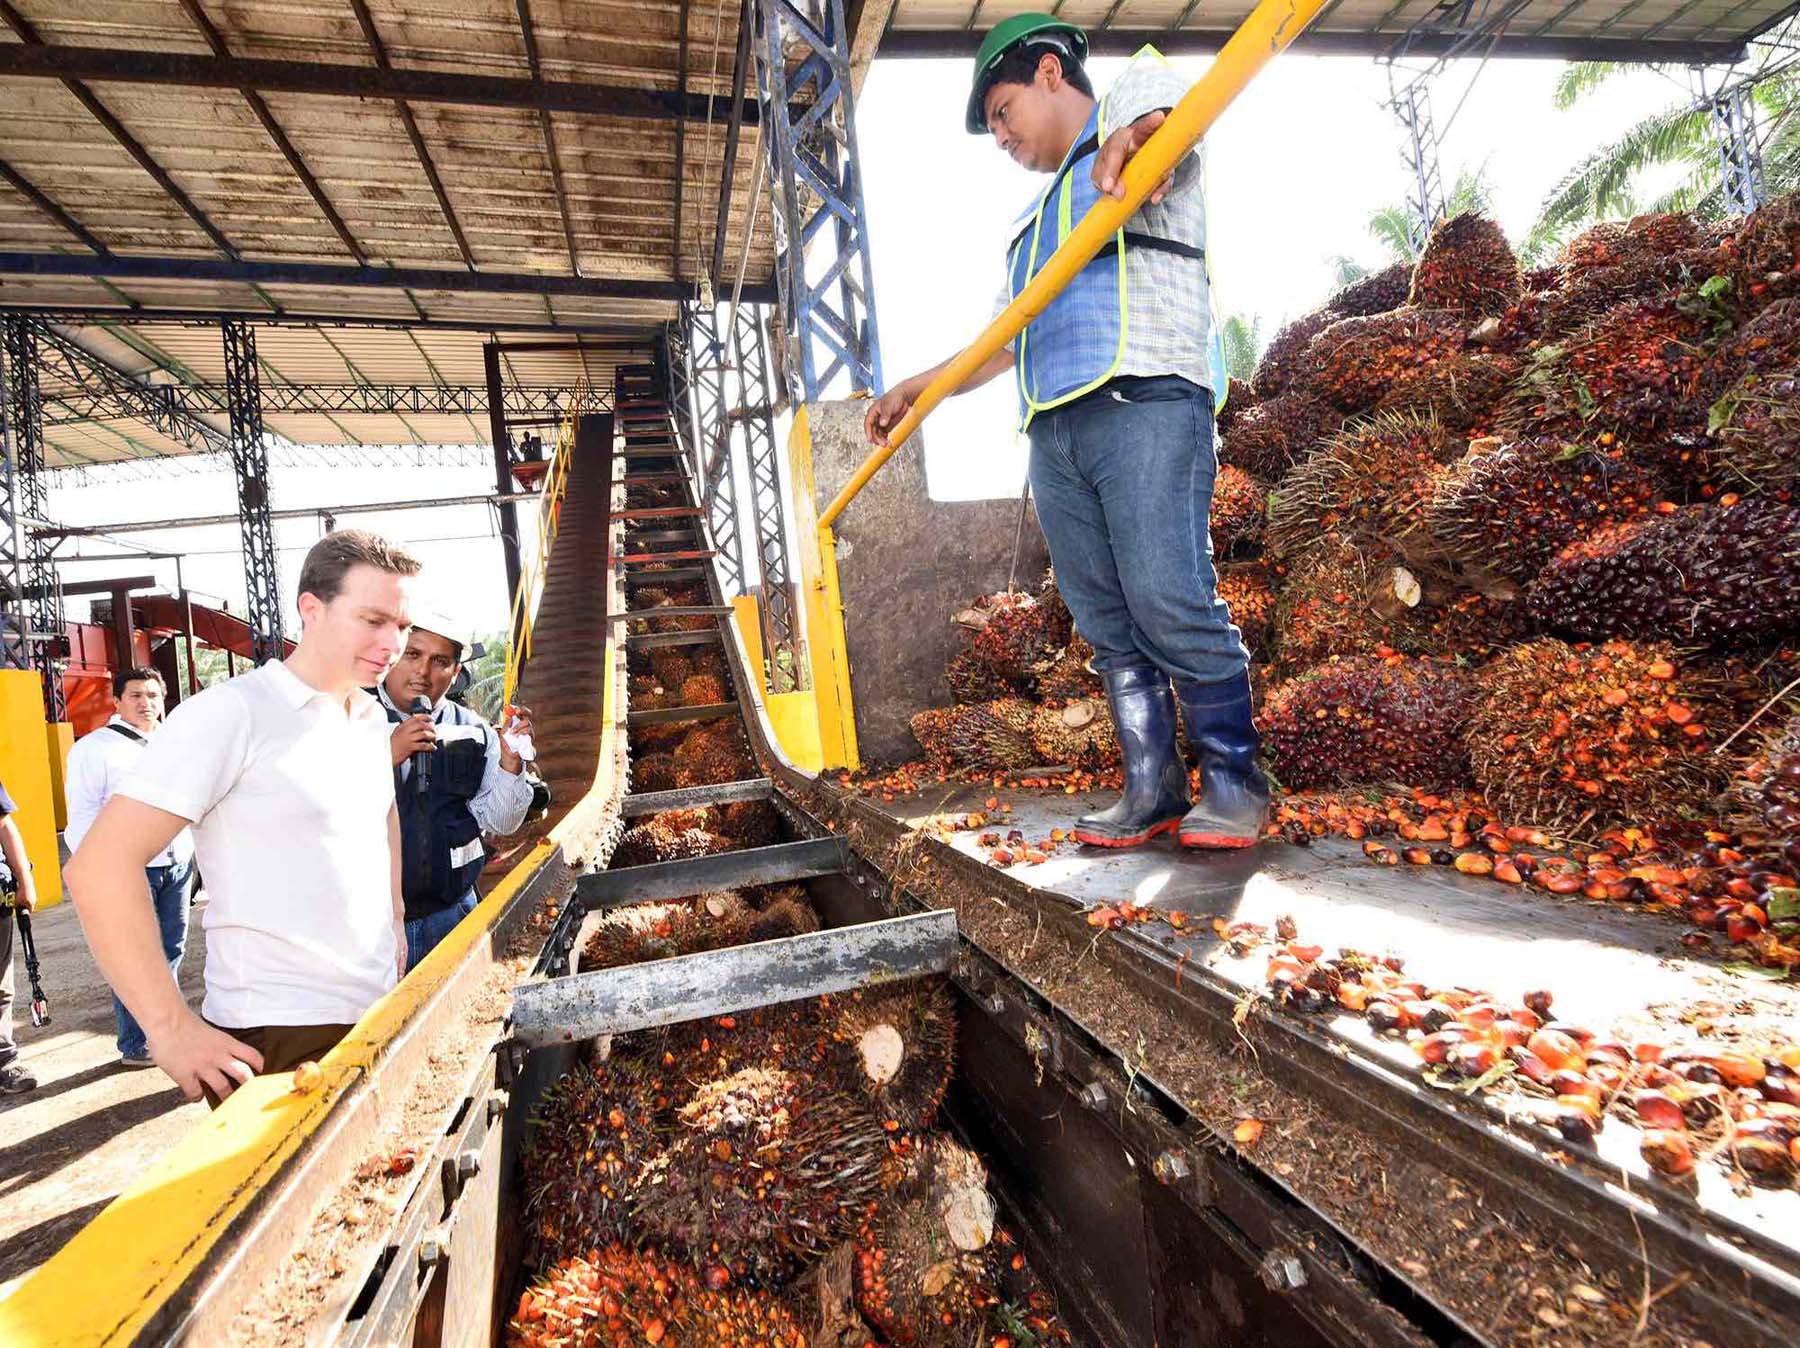 En diciembre de 2016, Manuel Velasco, entonces gobernador de Chiapas, inauguró una planta procesadora de aceite de palma en Acapetahua. Foto: Gobierno de Chiapas.